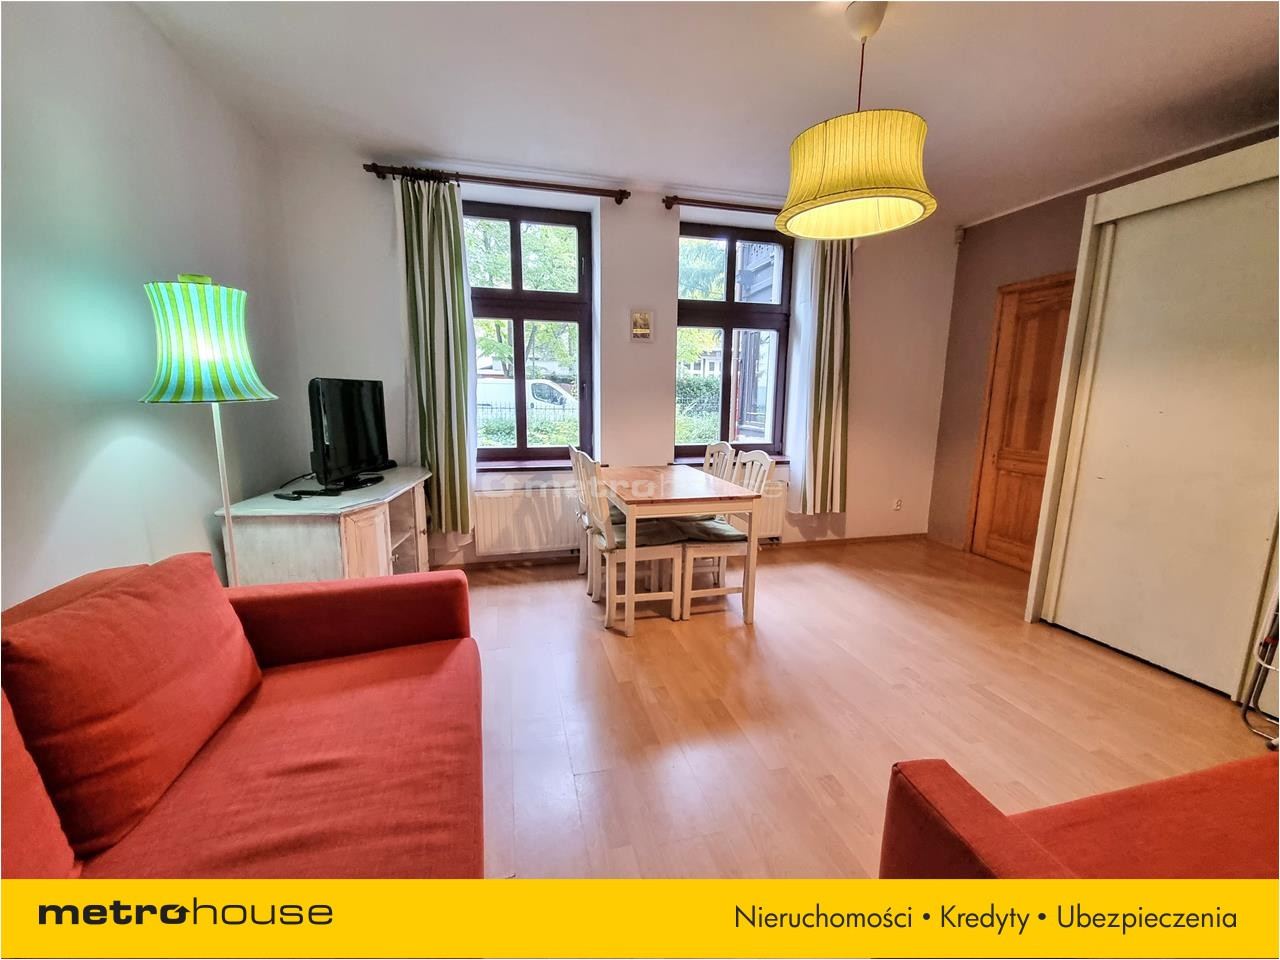 Mieszkanie na sprzedaż, Sopot, Dolny Sopot, 2 pokoje, 70 mkw, za 1270000 zł: zdjęcie 92839903